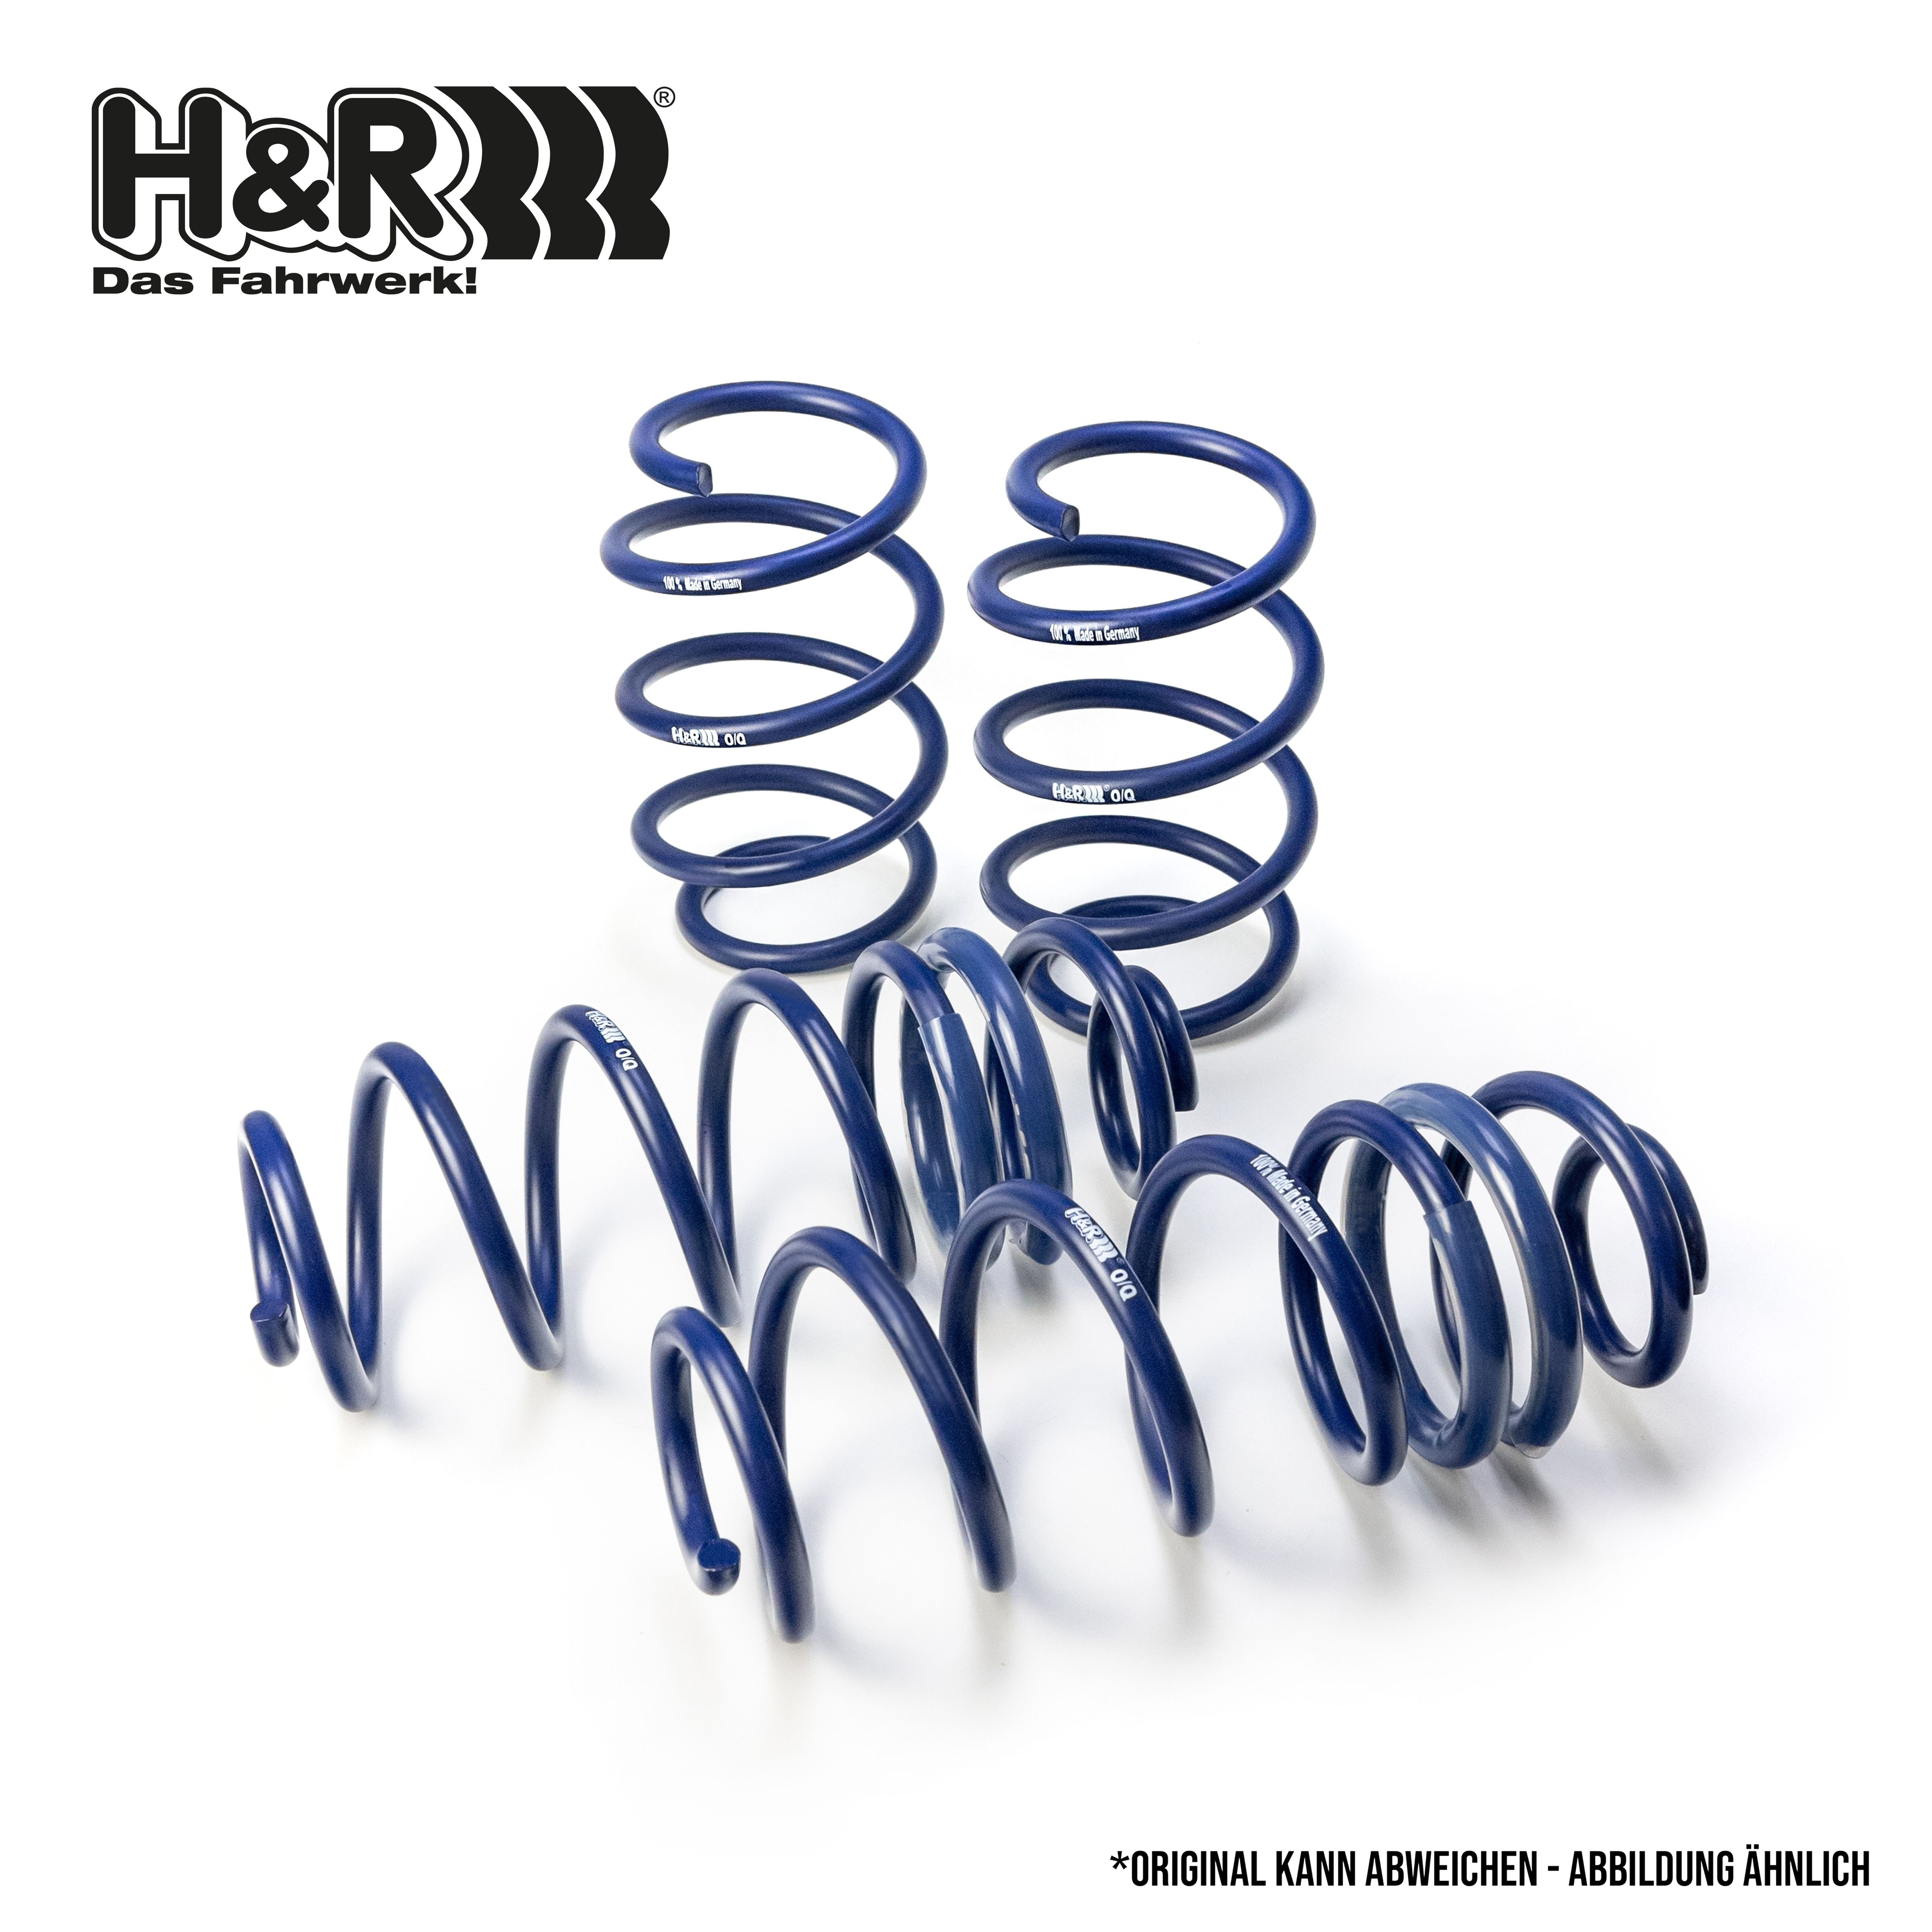 H&R Spring kit 29080-2